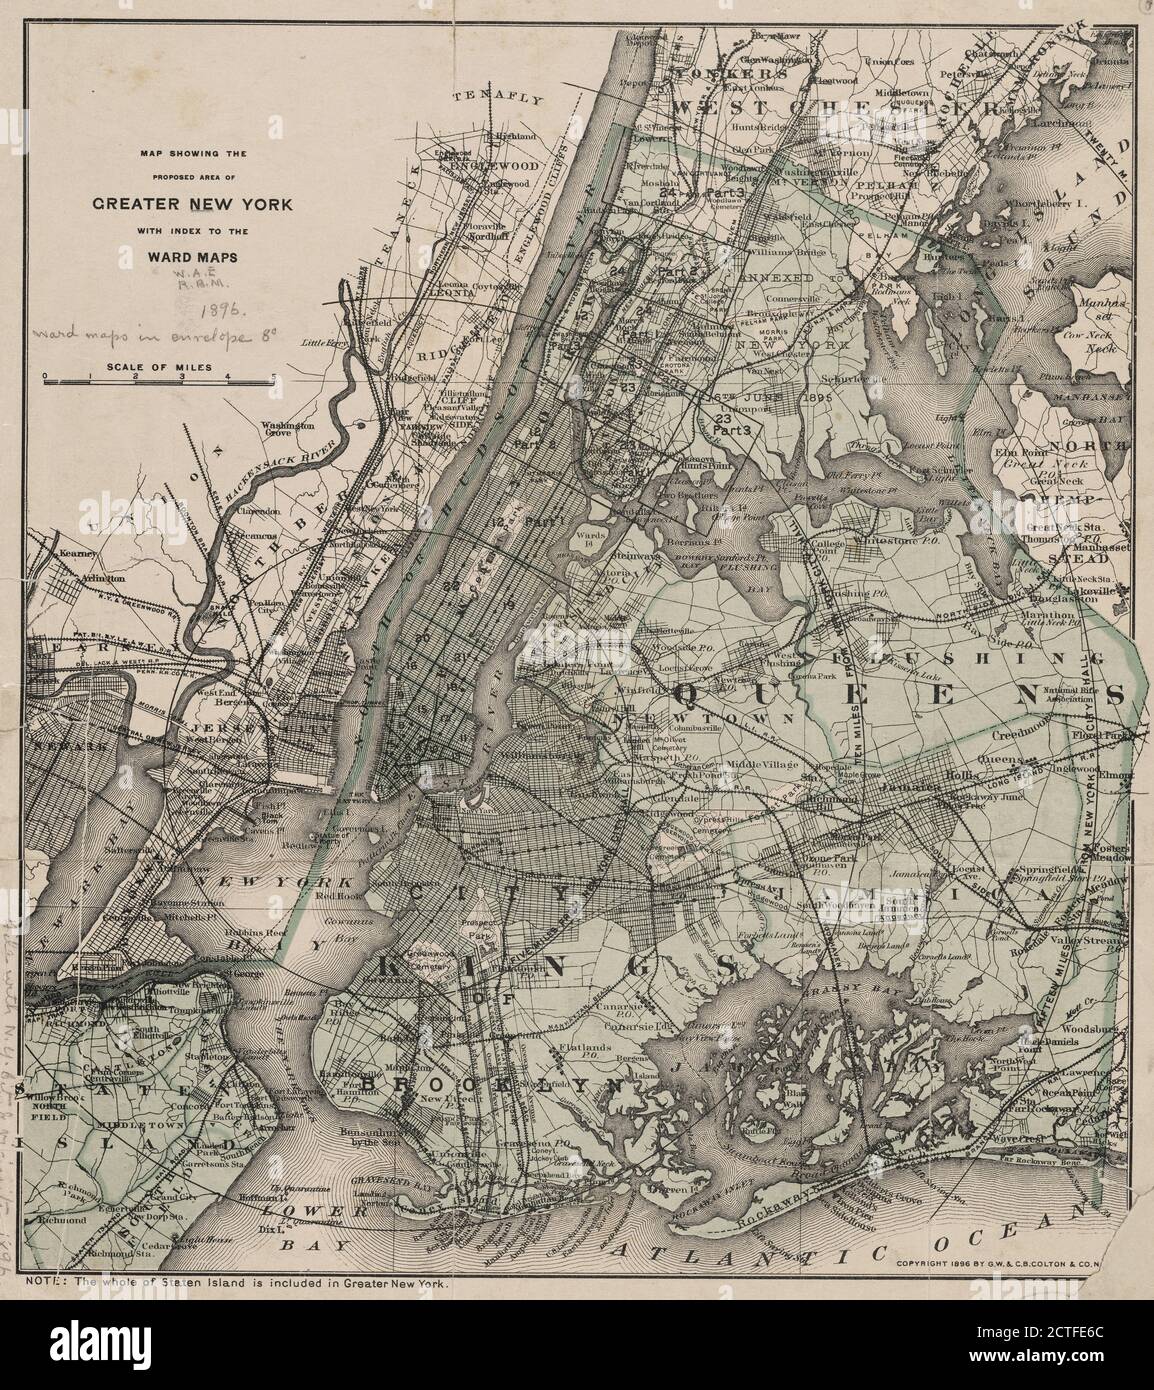 Mappa che mostra l'area proposta di Greater New York, con indice delle mappe di Ward., cartografia, Mappe, 1896 Foto Stock